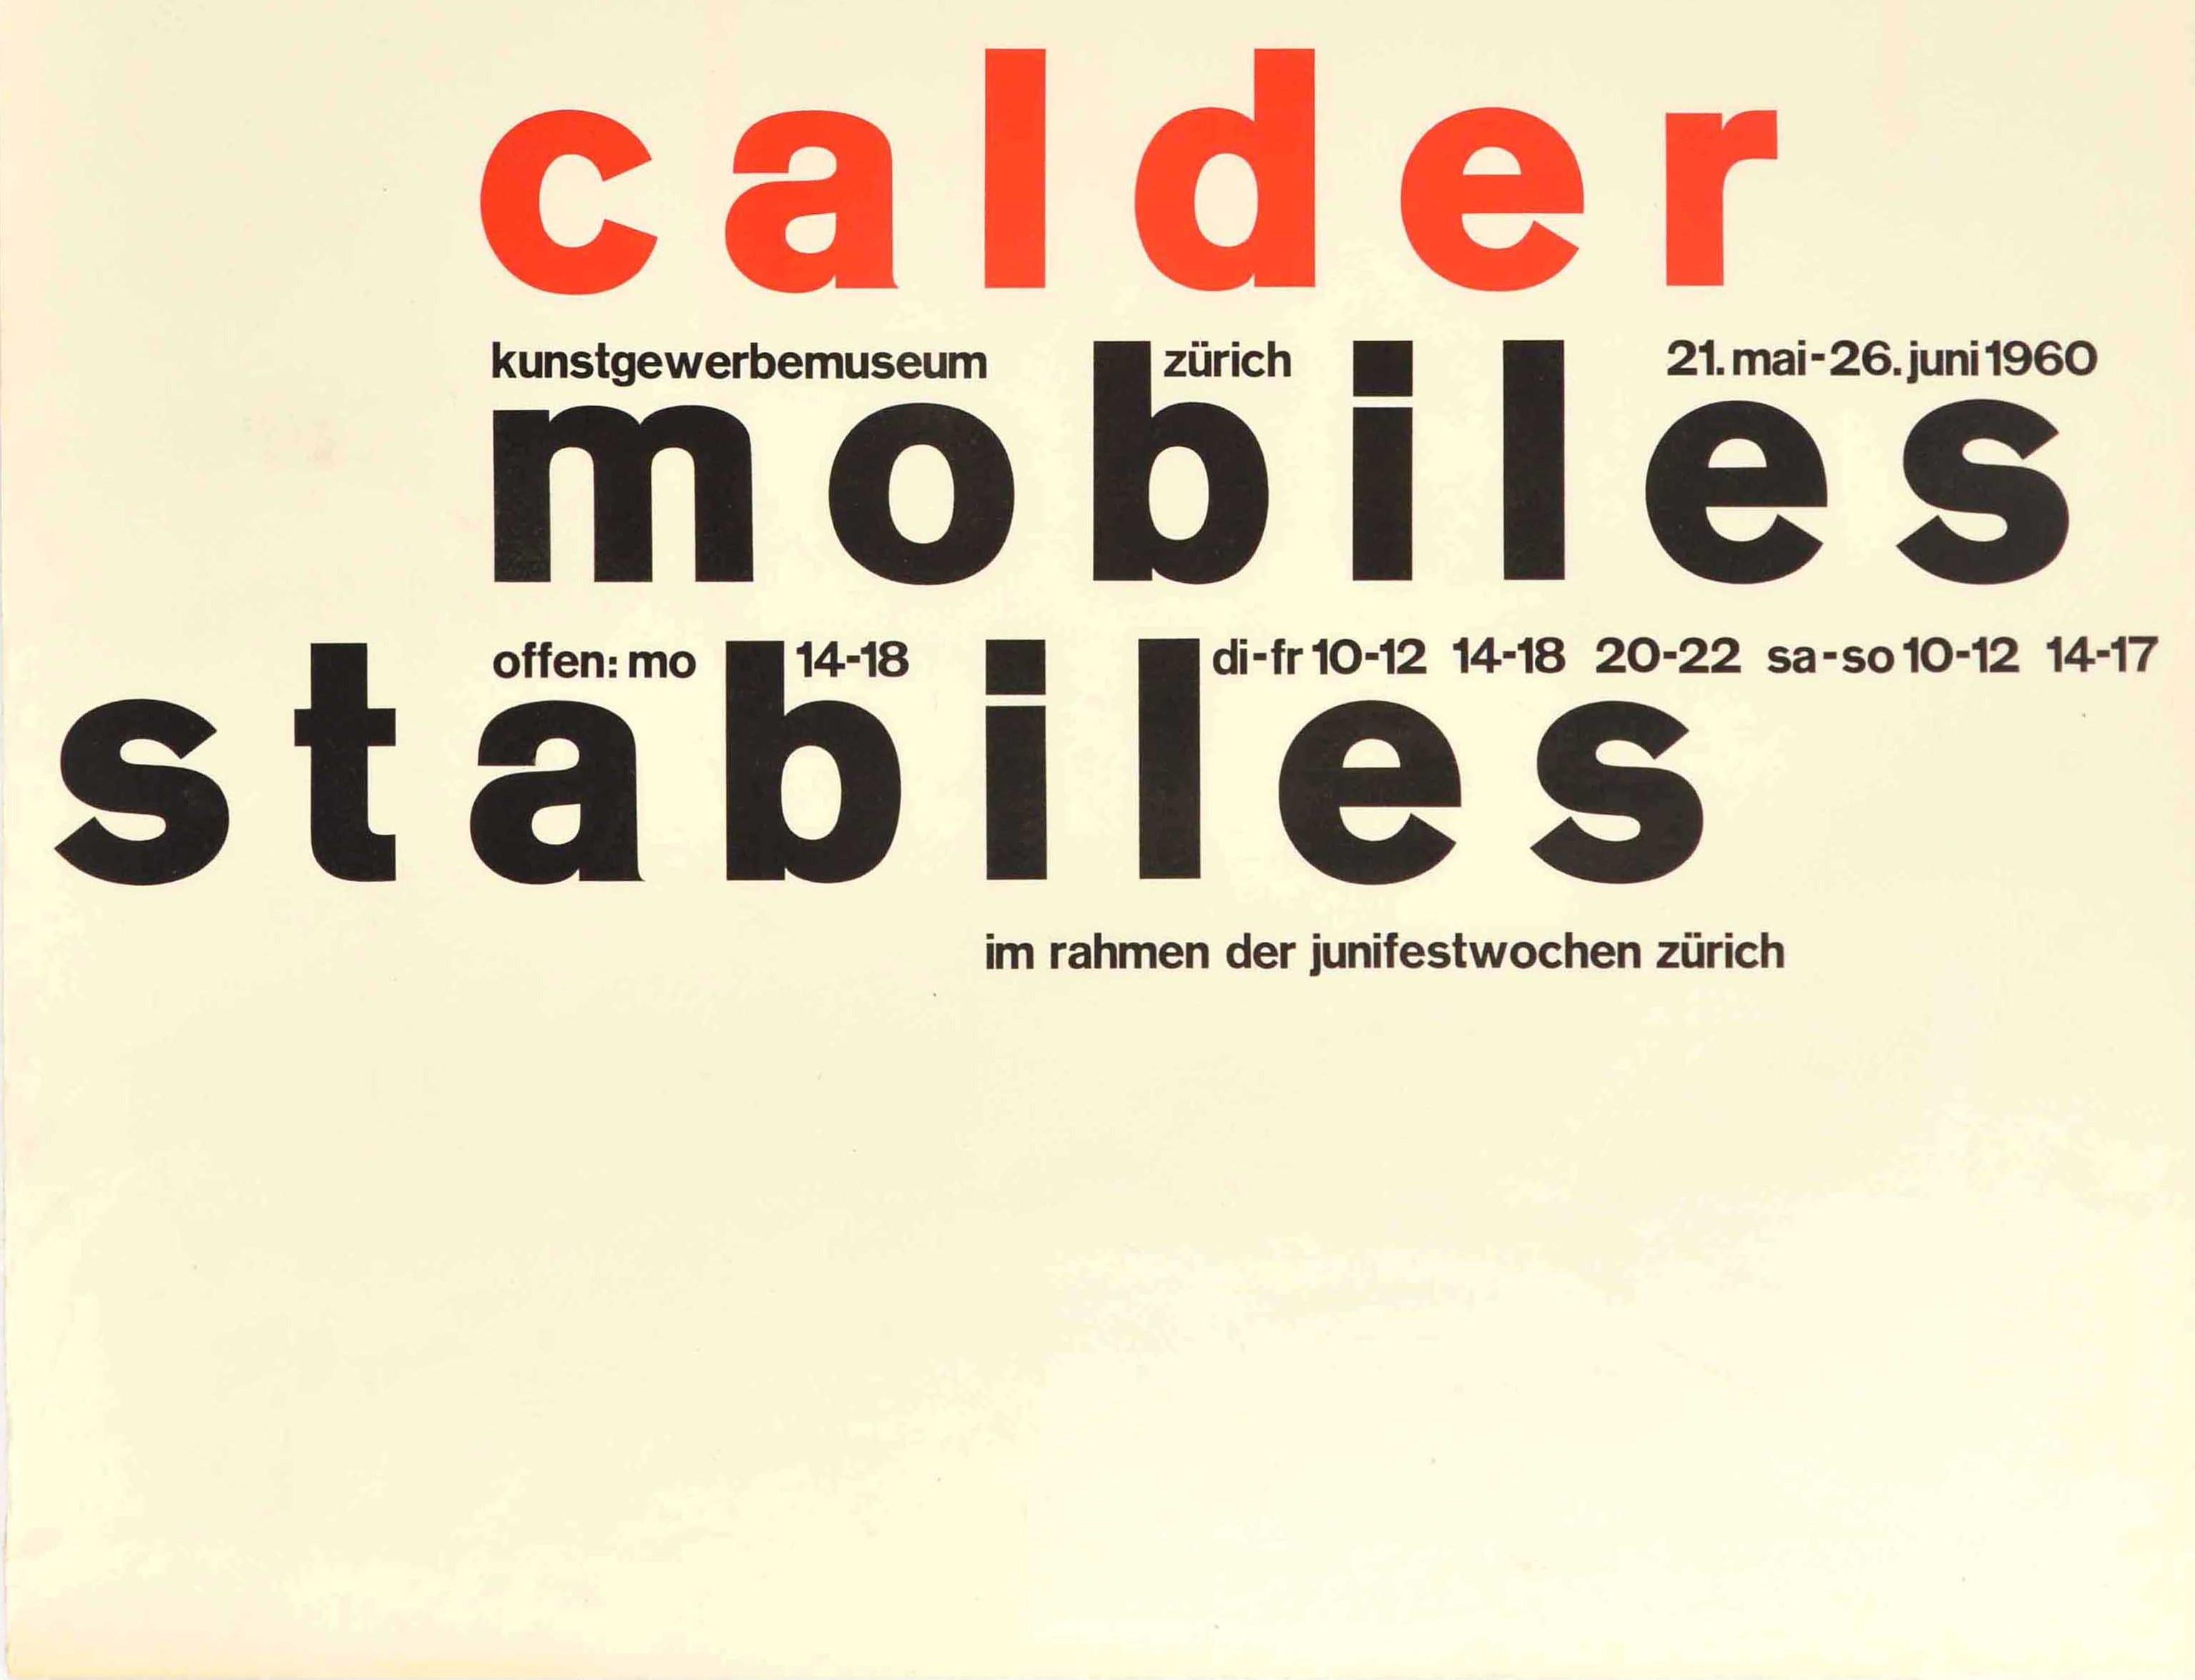 Swiss Original Vintage Art Exhibition Poster Alexander Calder Kinetic Mobile Sculpture